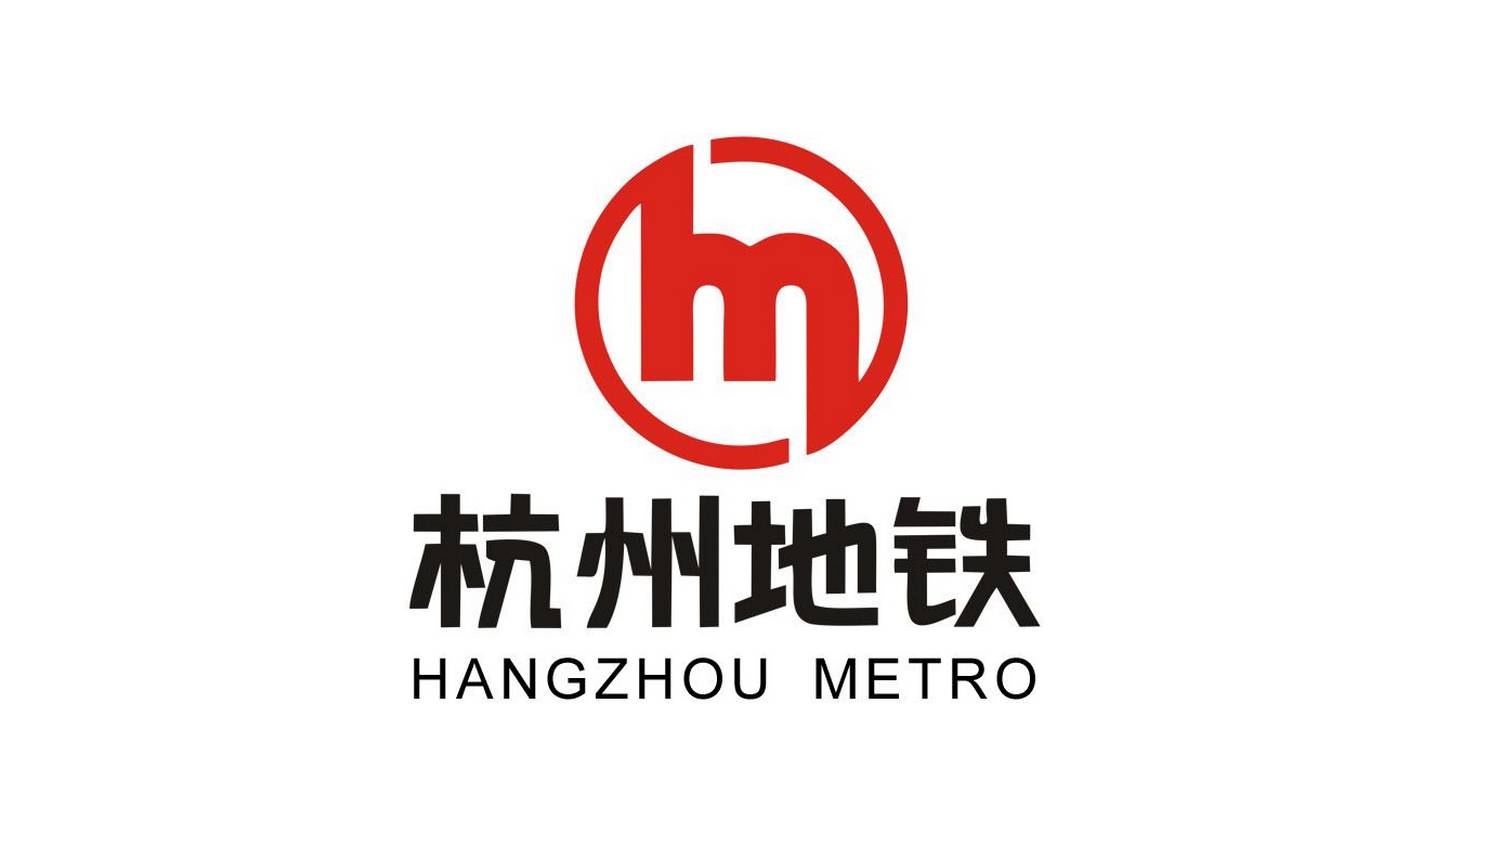 香港地铁的标志由著名设计师李永铨设计,标志的含义为: 1,表示香港本